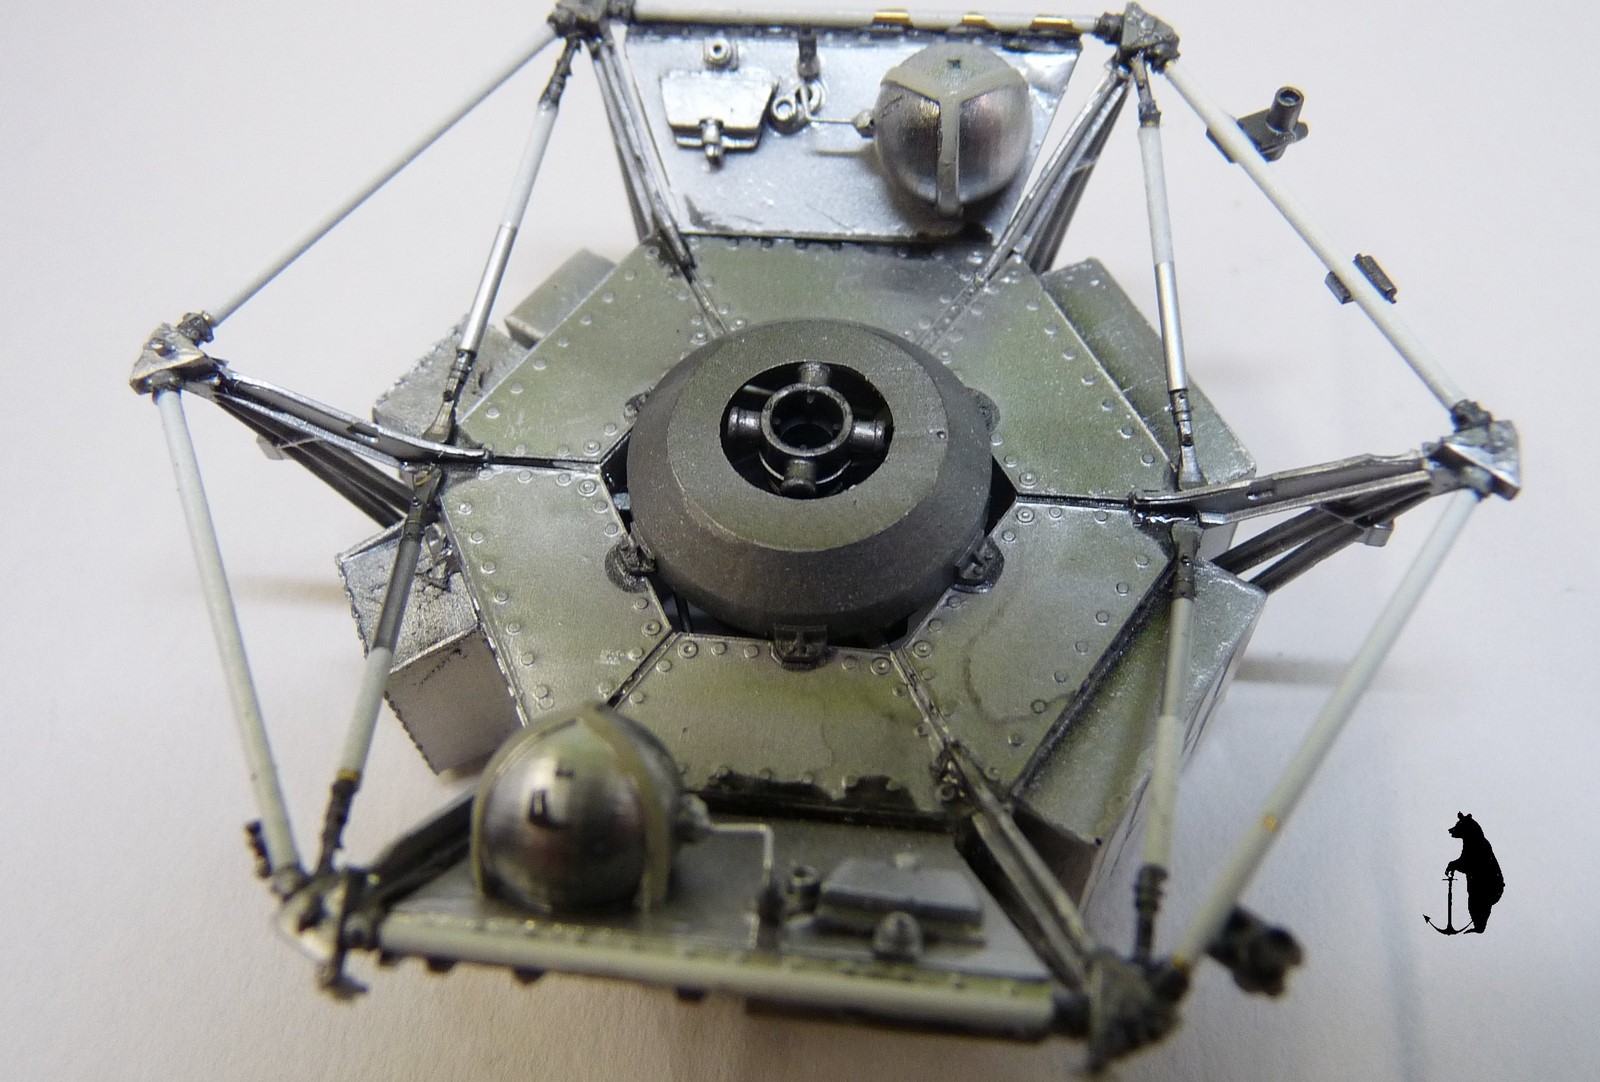 Crash-test planétaire : la sonde lunaire Ranger 8 au 1/24e 17072103231823134915160157